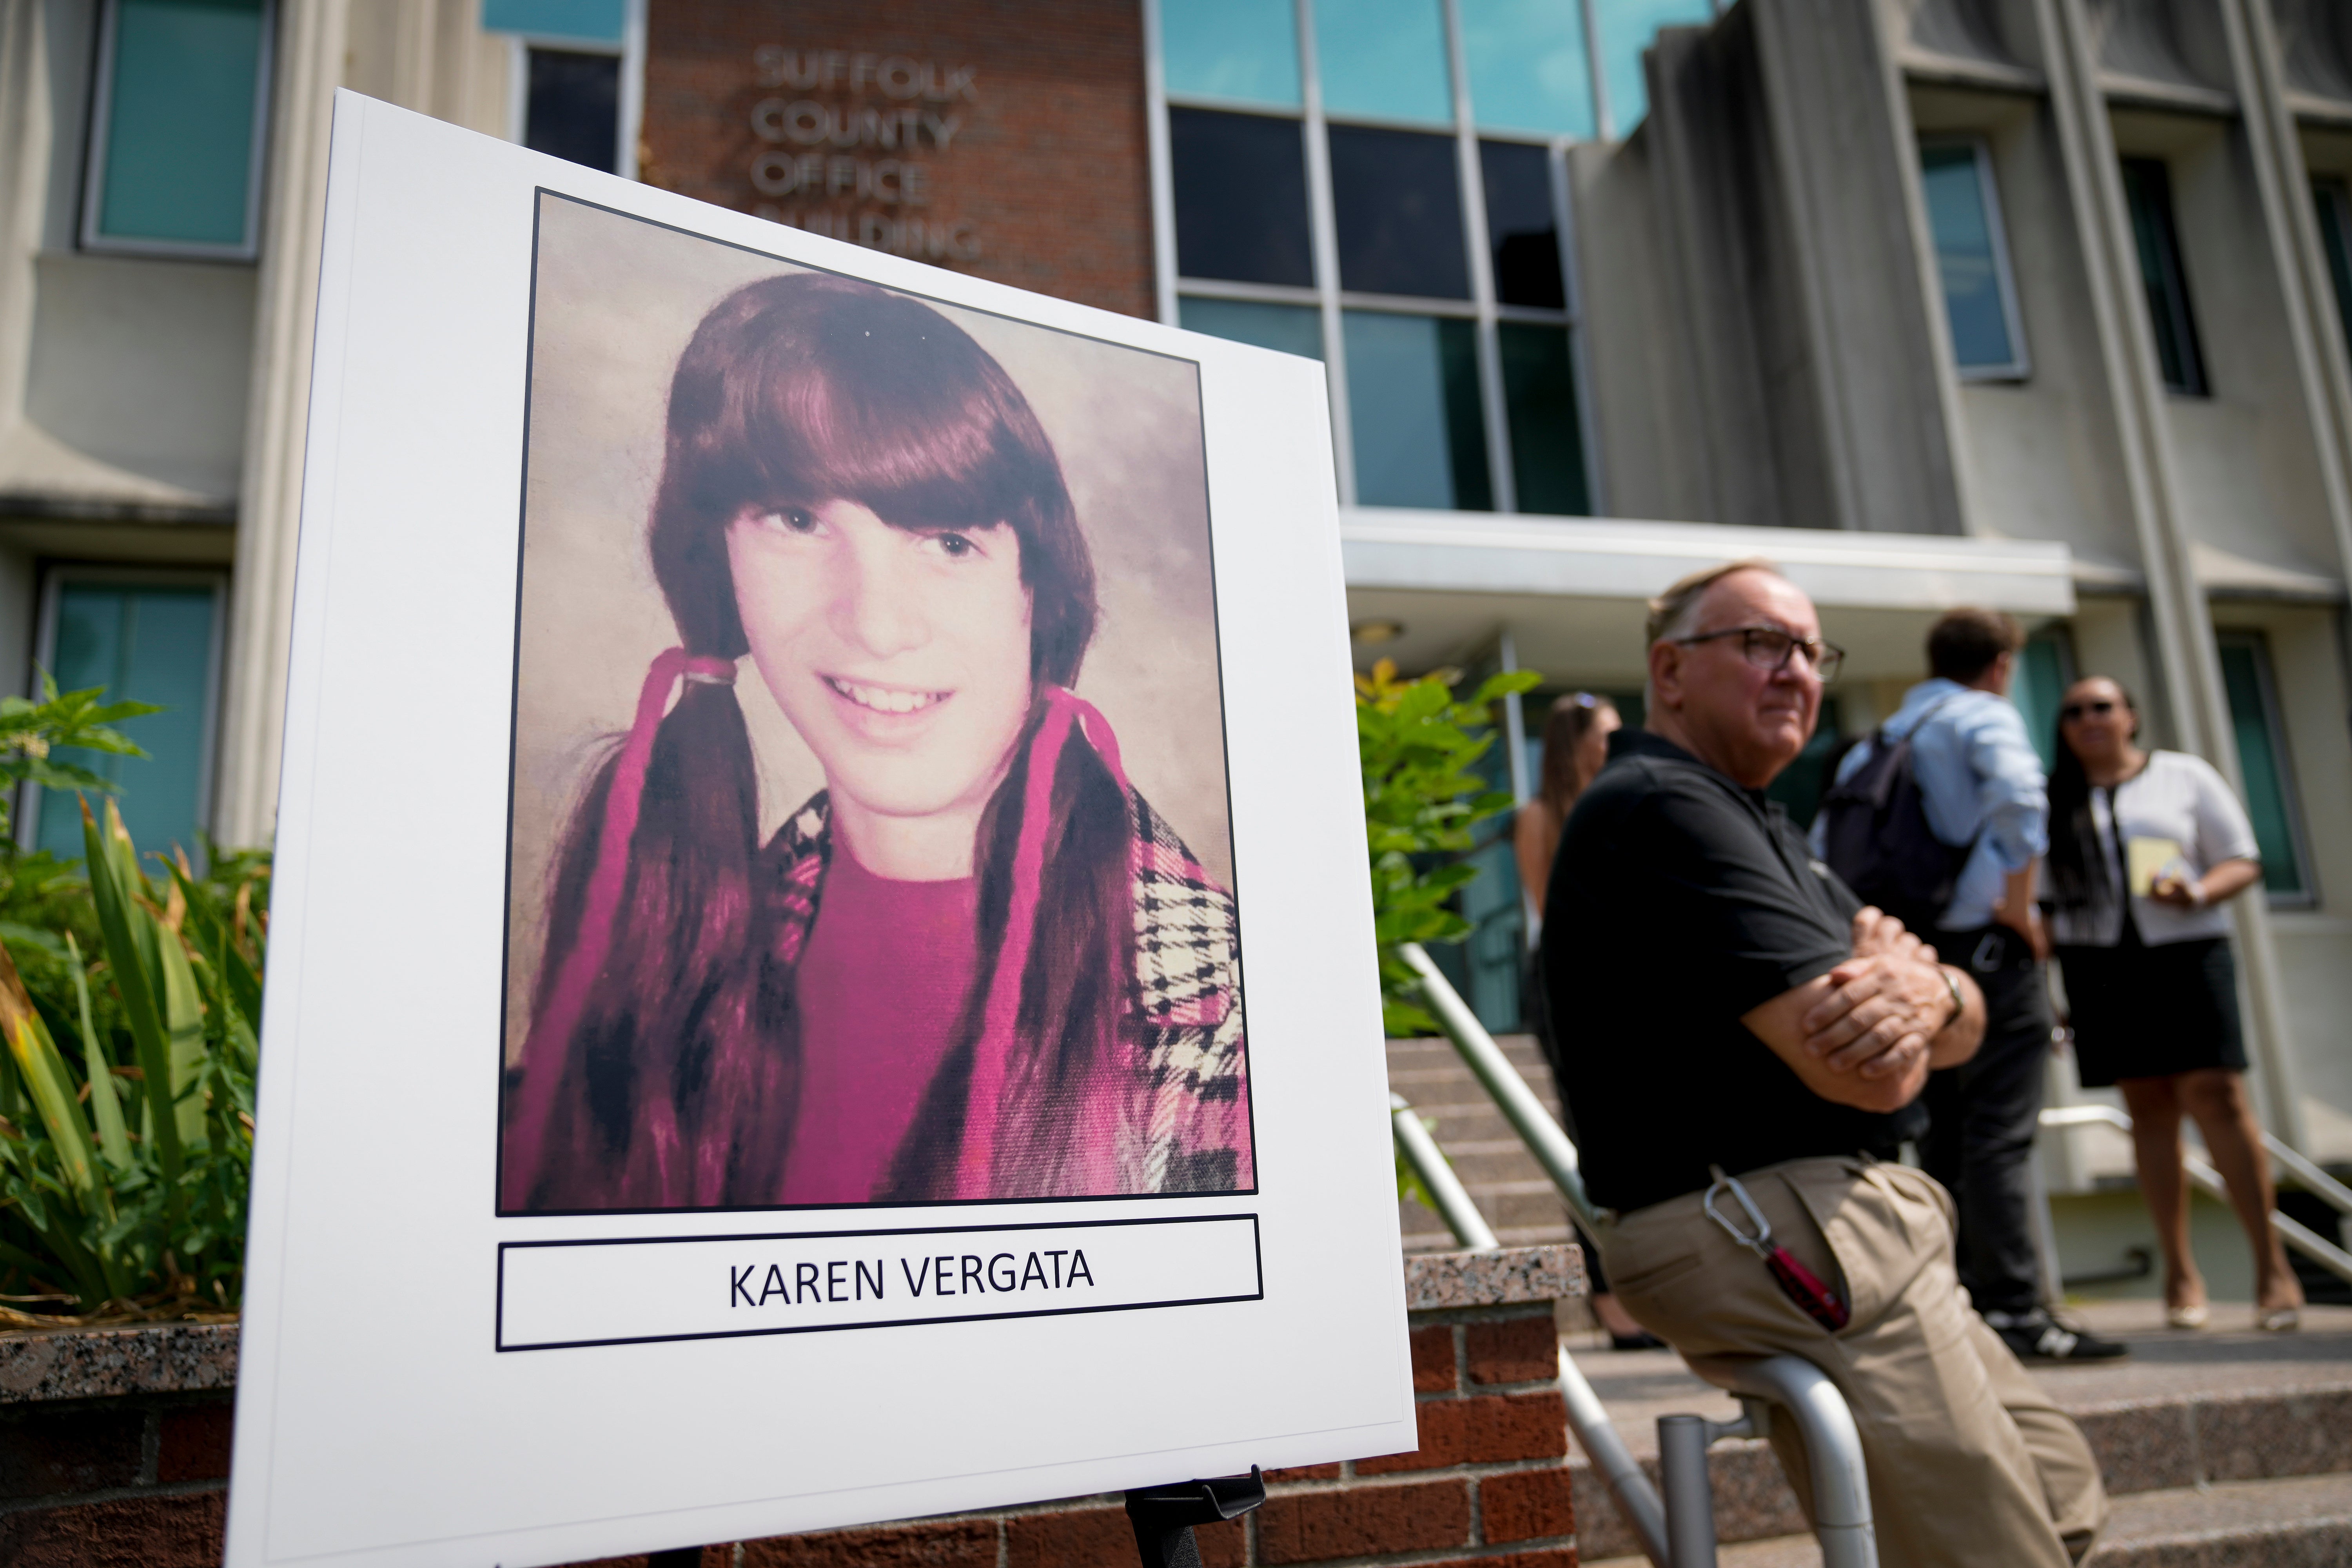 Karen Vergata was identified in August